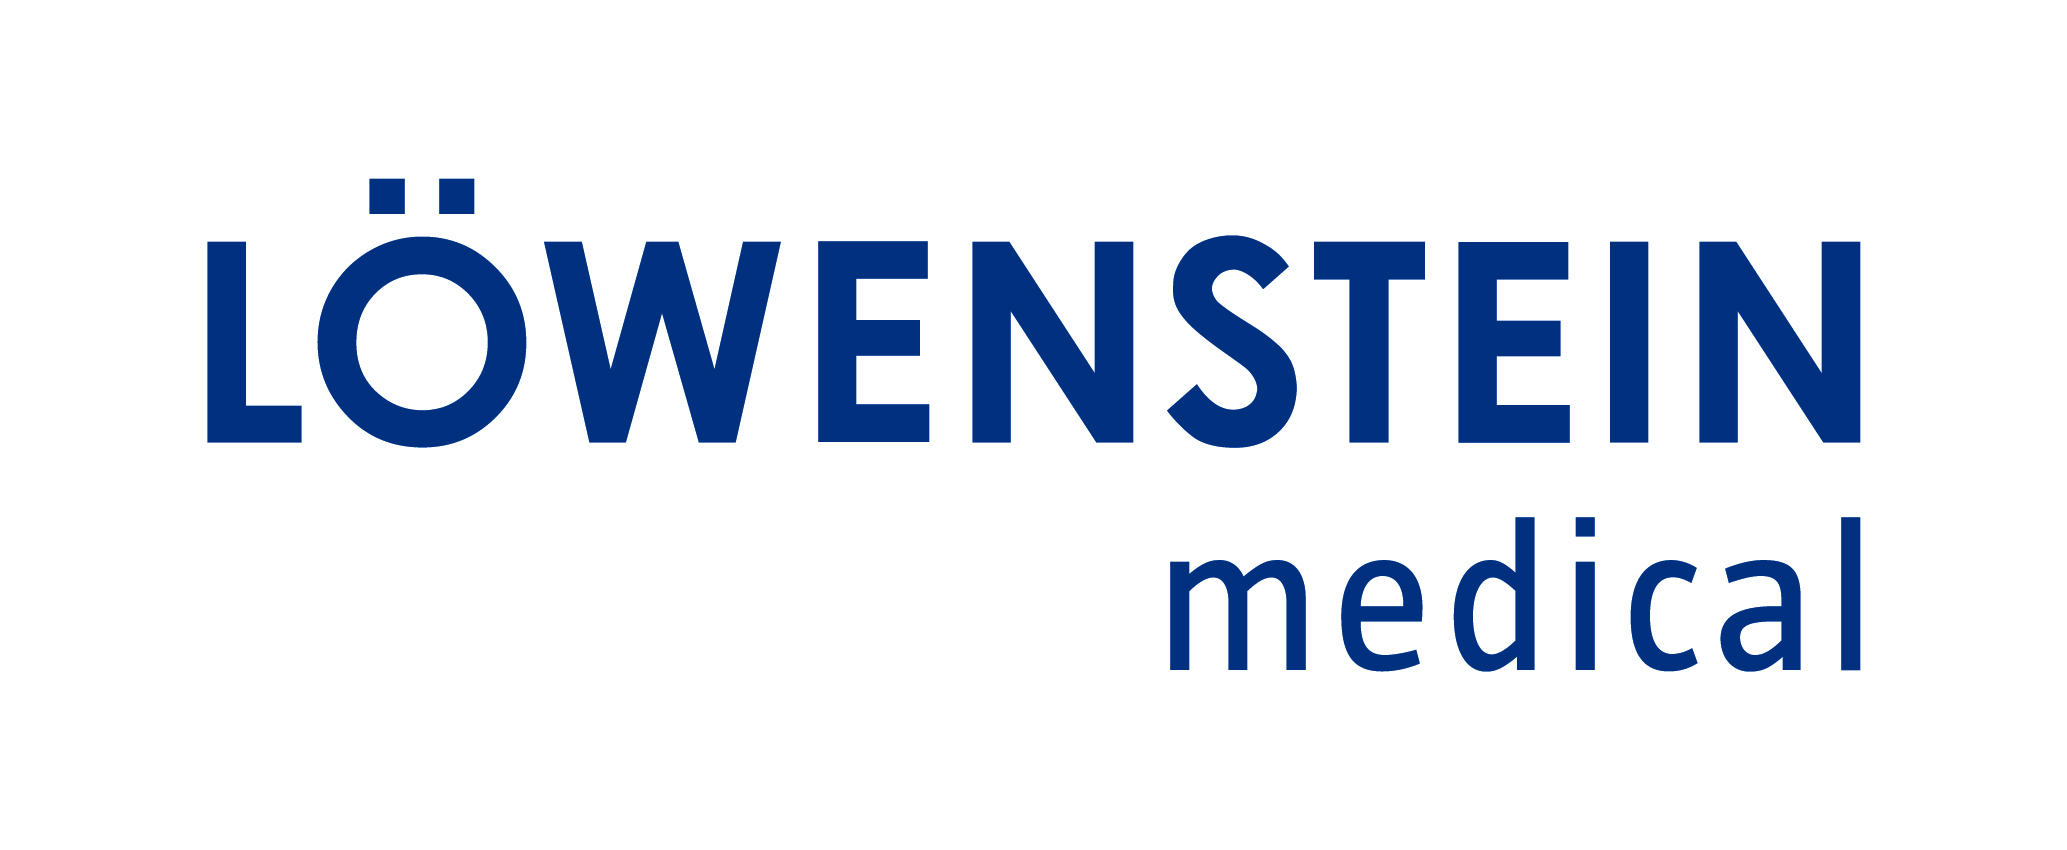 Das Logo von Löwenstein Medical